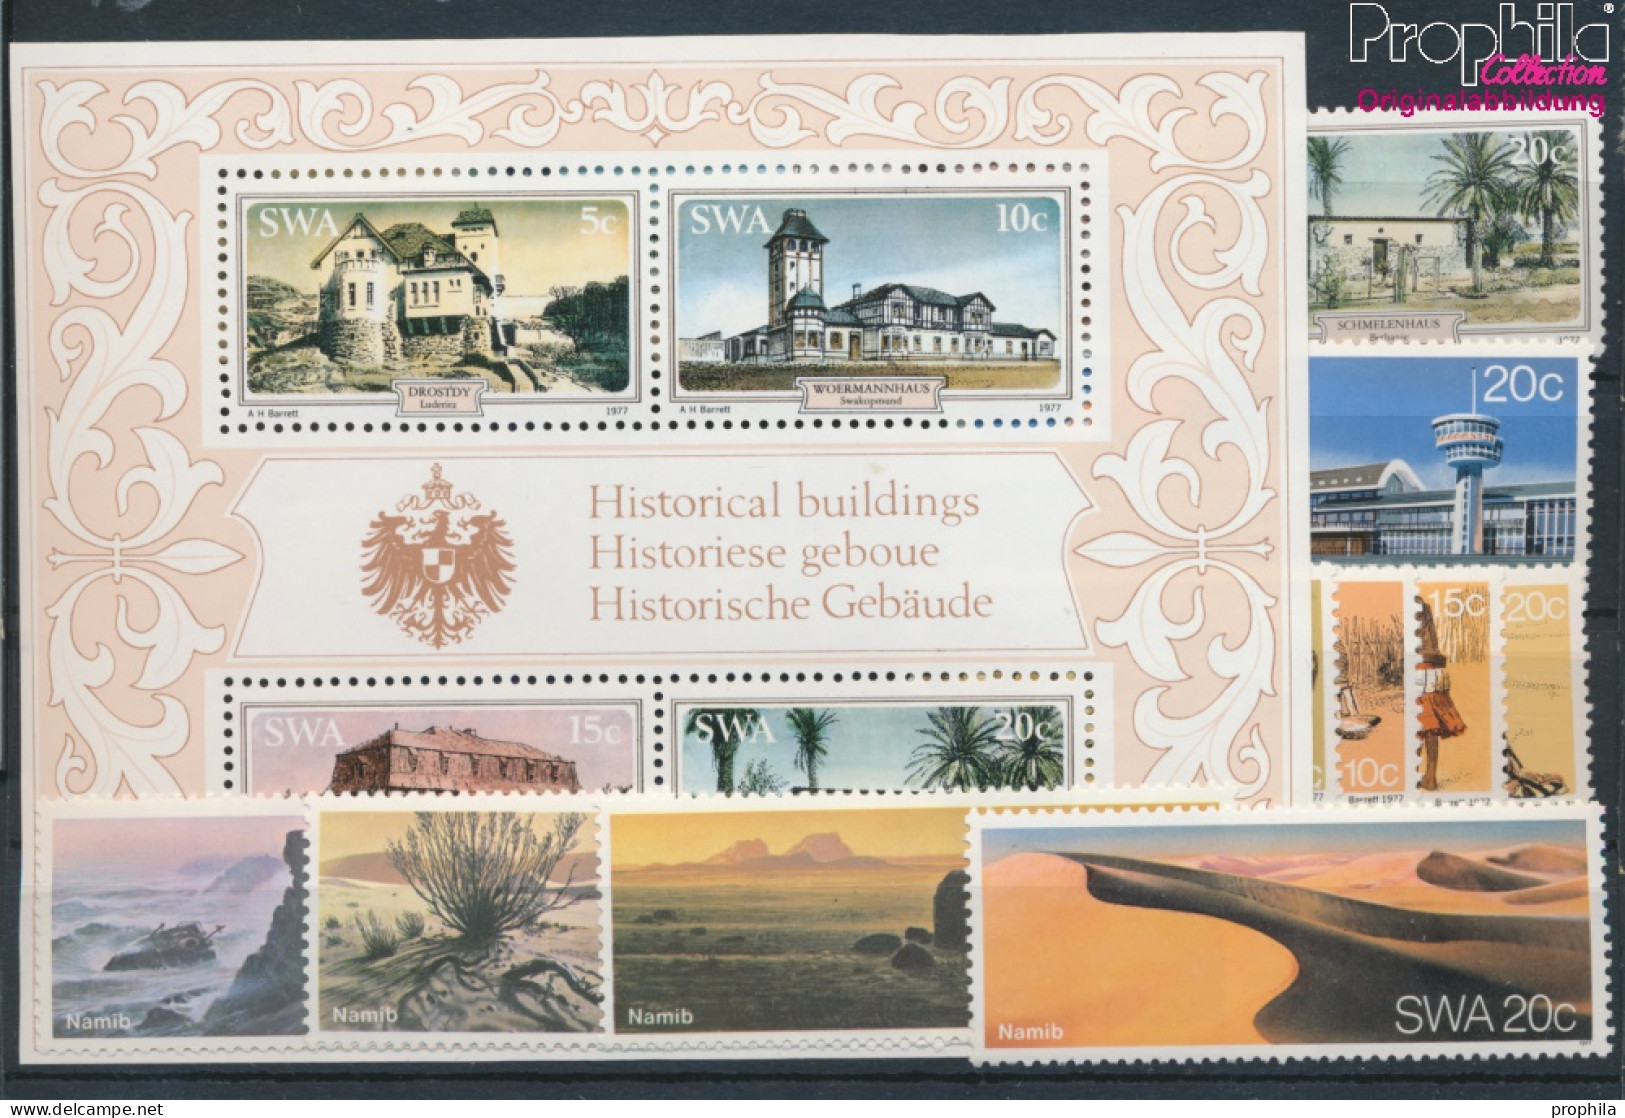 Namibia - Südwestafrika Postfrisch Namib-Wüste 1977 Gebäude, Namib, Wambos, Flughafen  (10368359 - Südwestafrika (1923-1990)